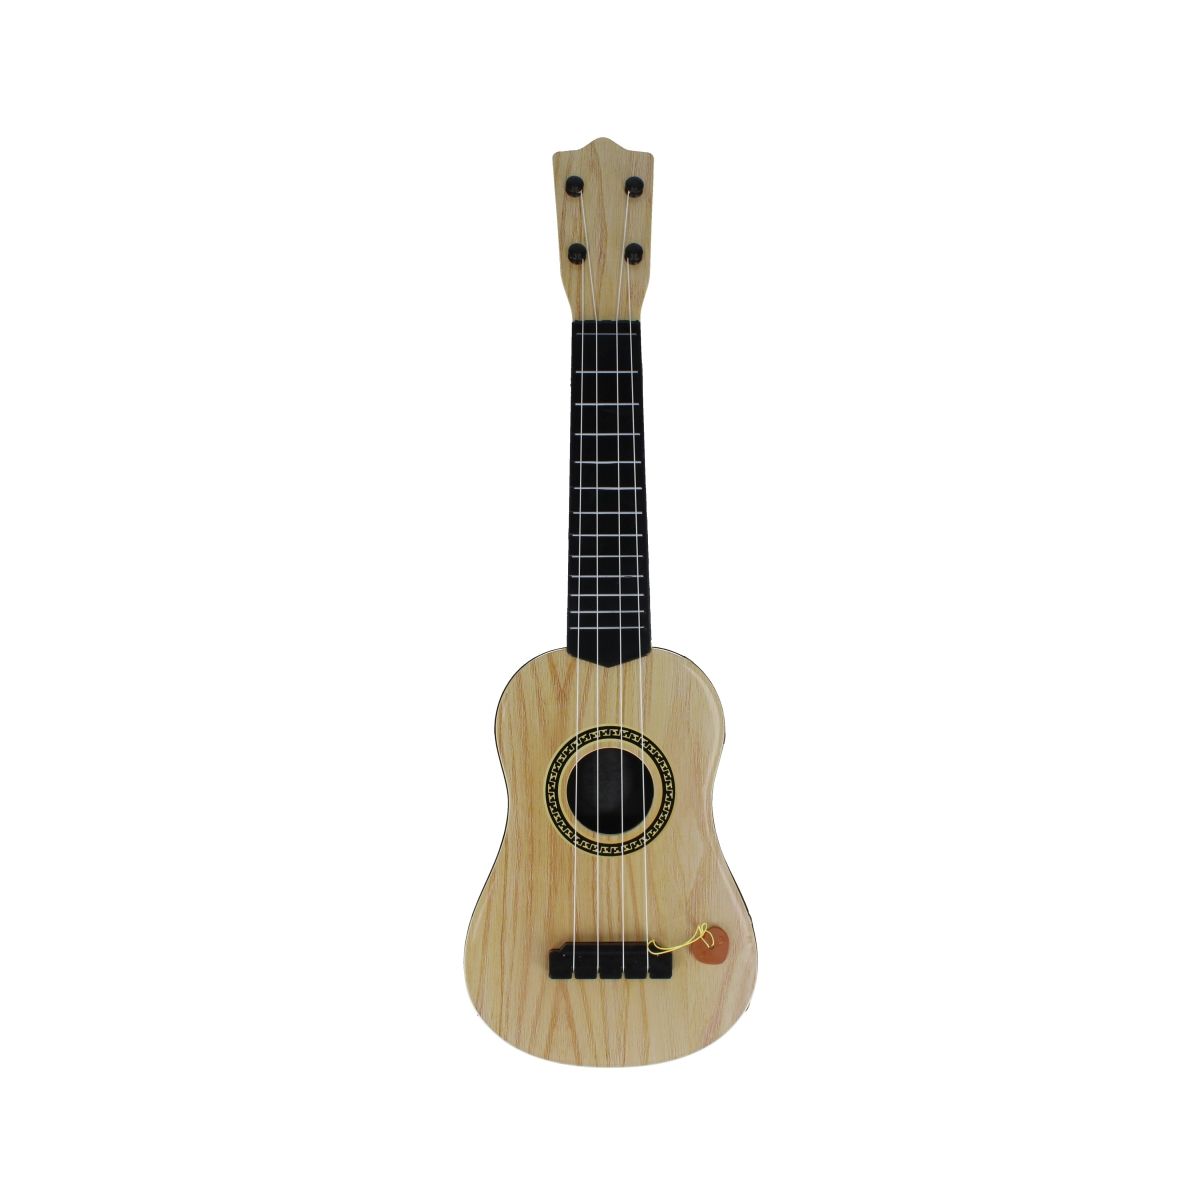 Gitara 57cm Mega Creative (511380)